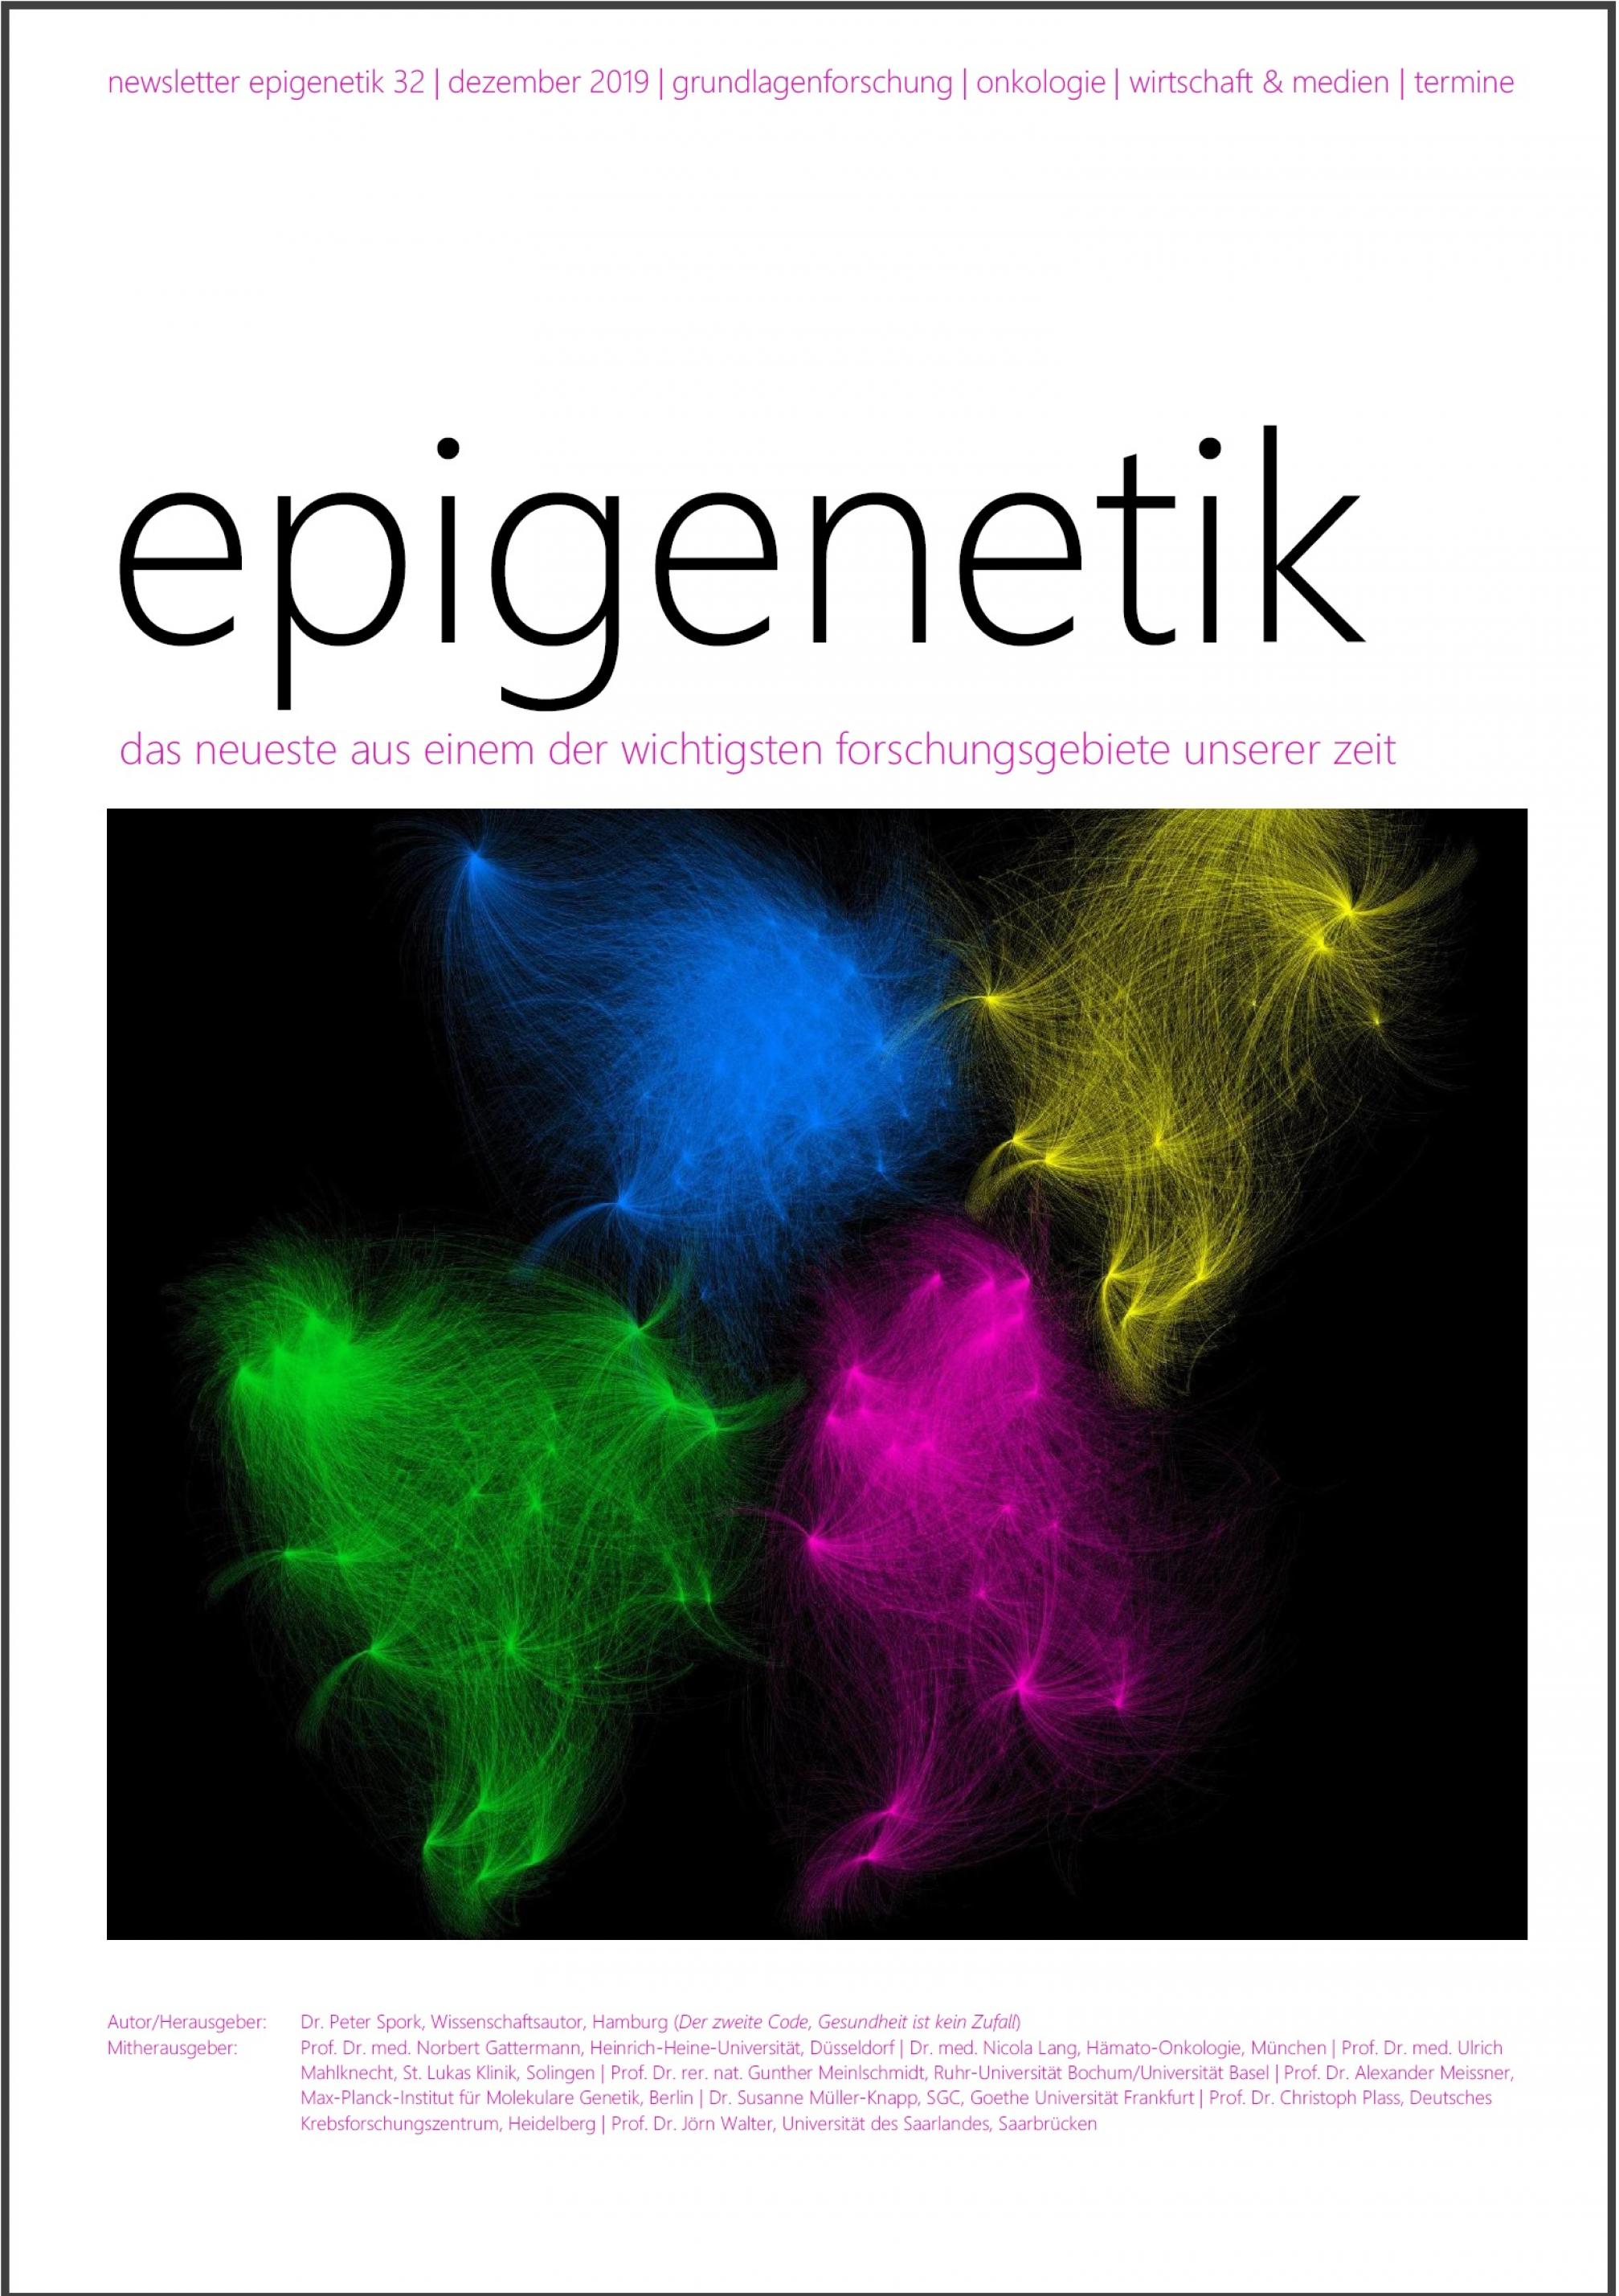 Newsletter Epigenetik 32 / Dezember 2019 / das neueste aus einem der wichtigsten forschungsgebiete unserer zeit